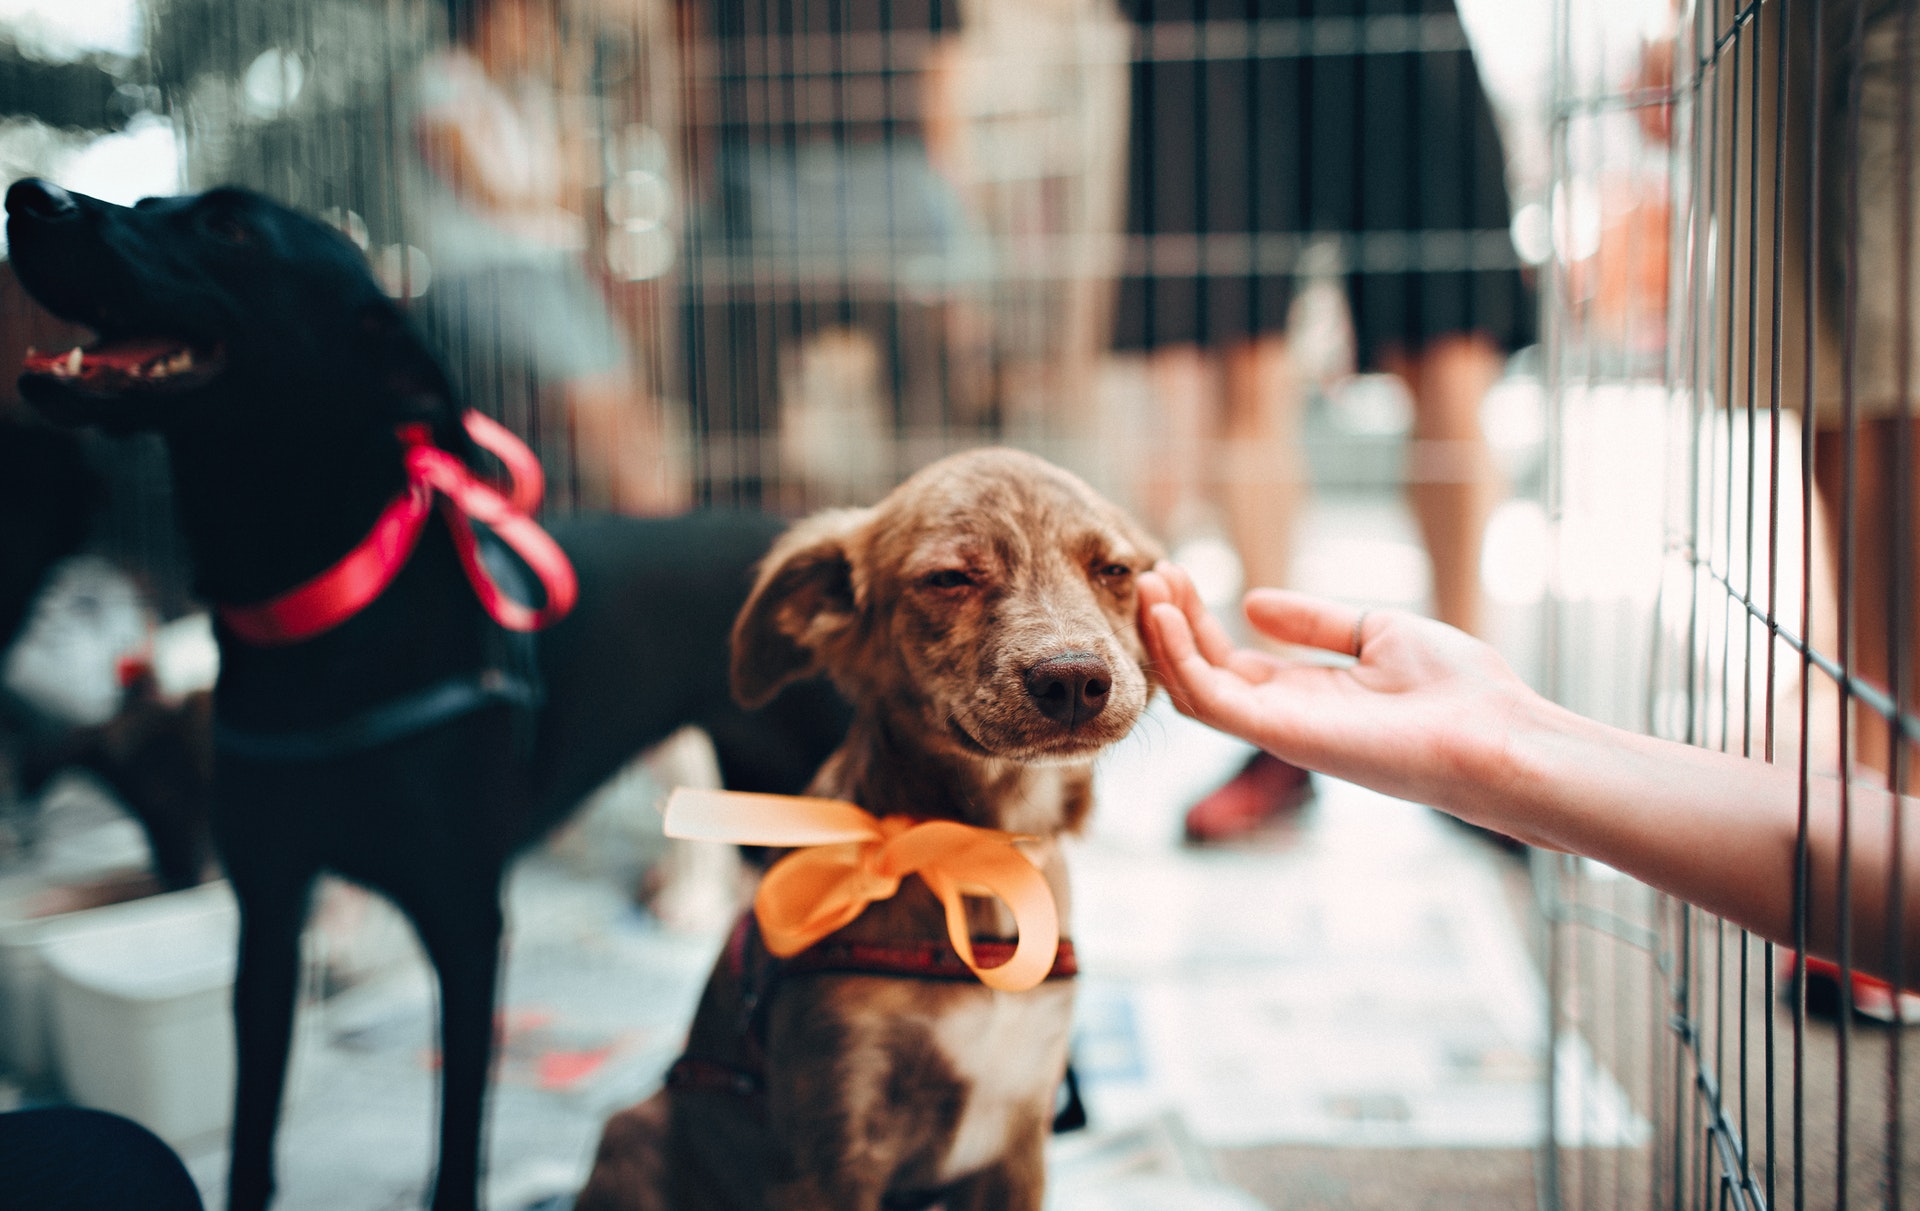 Alguém está passando a mão em um cãozinho triste cor de mel com laço laranja no pescoço. É visto ao fundo um cão negro com laço rosa no pescoço.